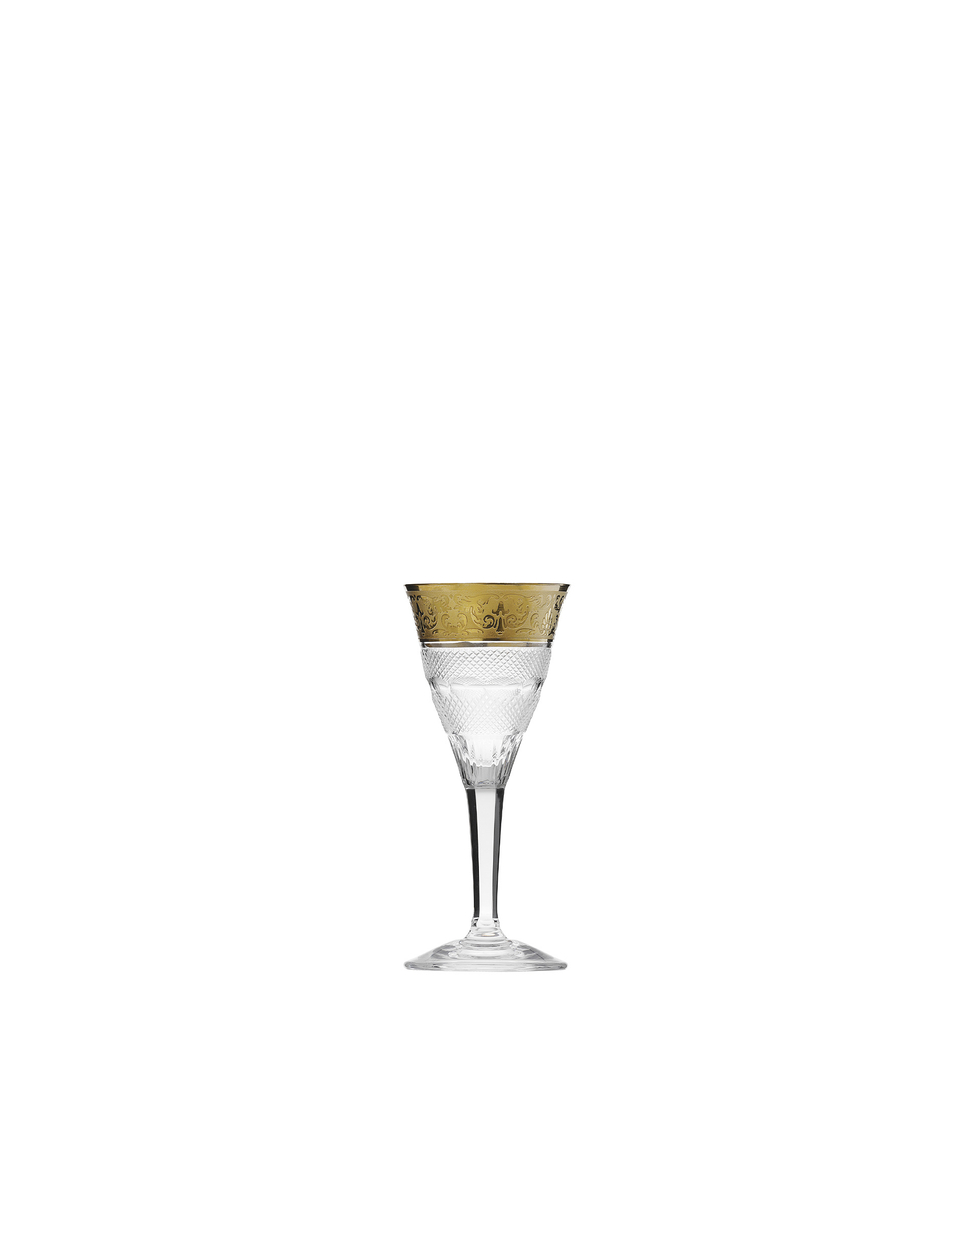 Splendid spirit glass, 45 ml